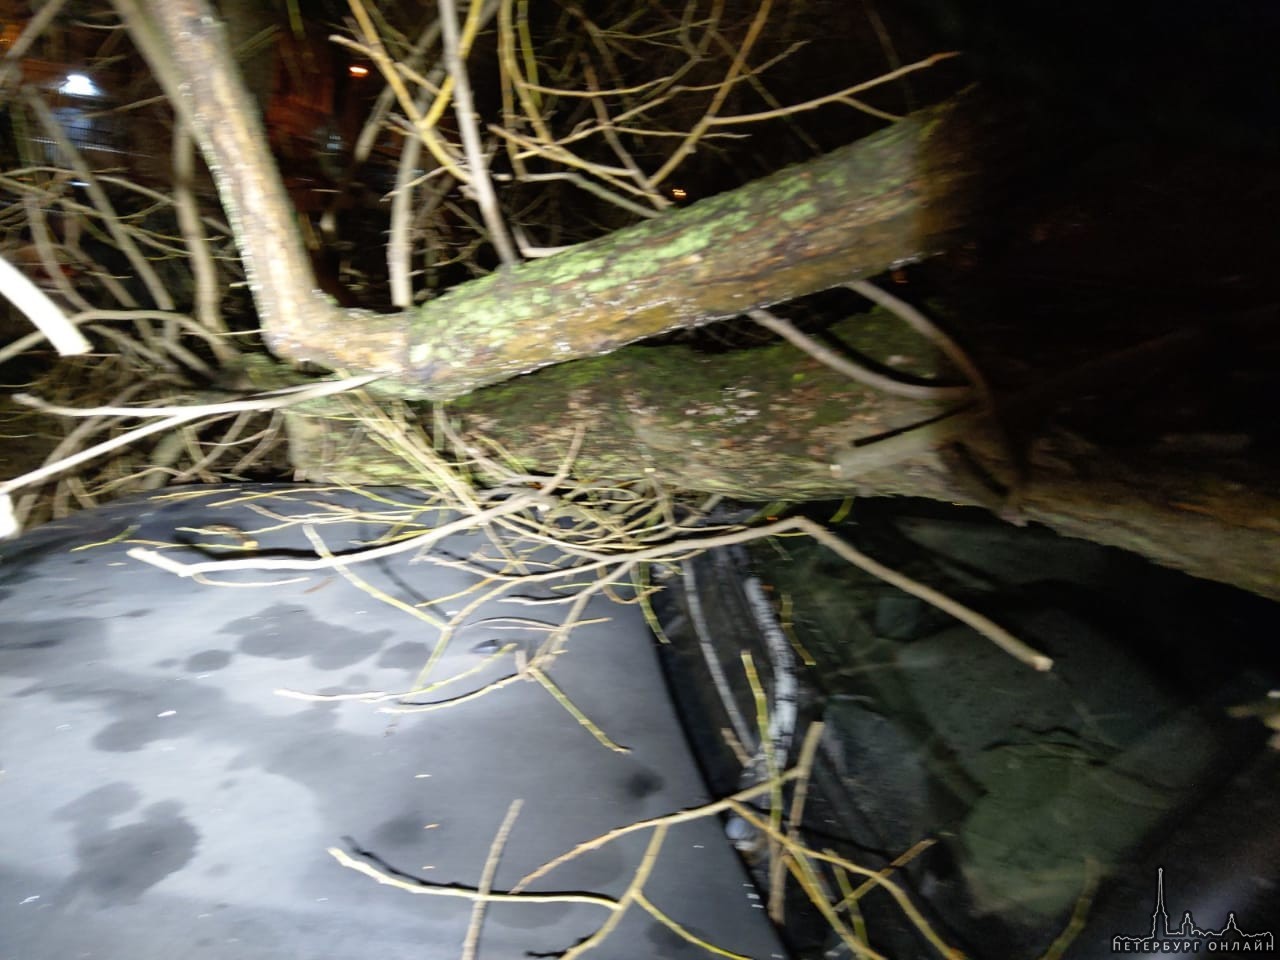 Вчера на проспекте Народного Ополчения у дома 93, дерево упало на припаркованные машины.